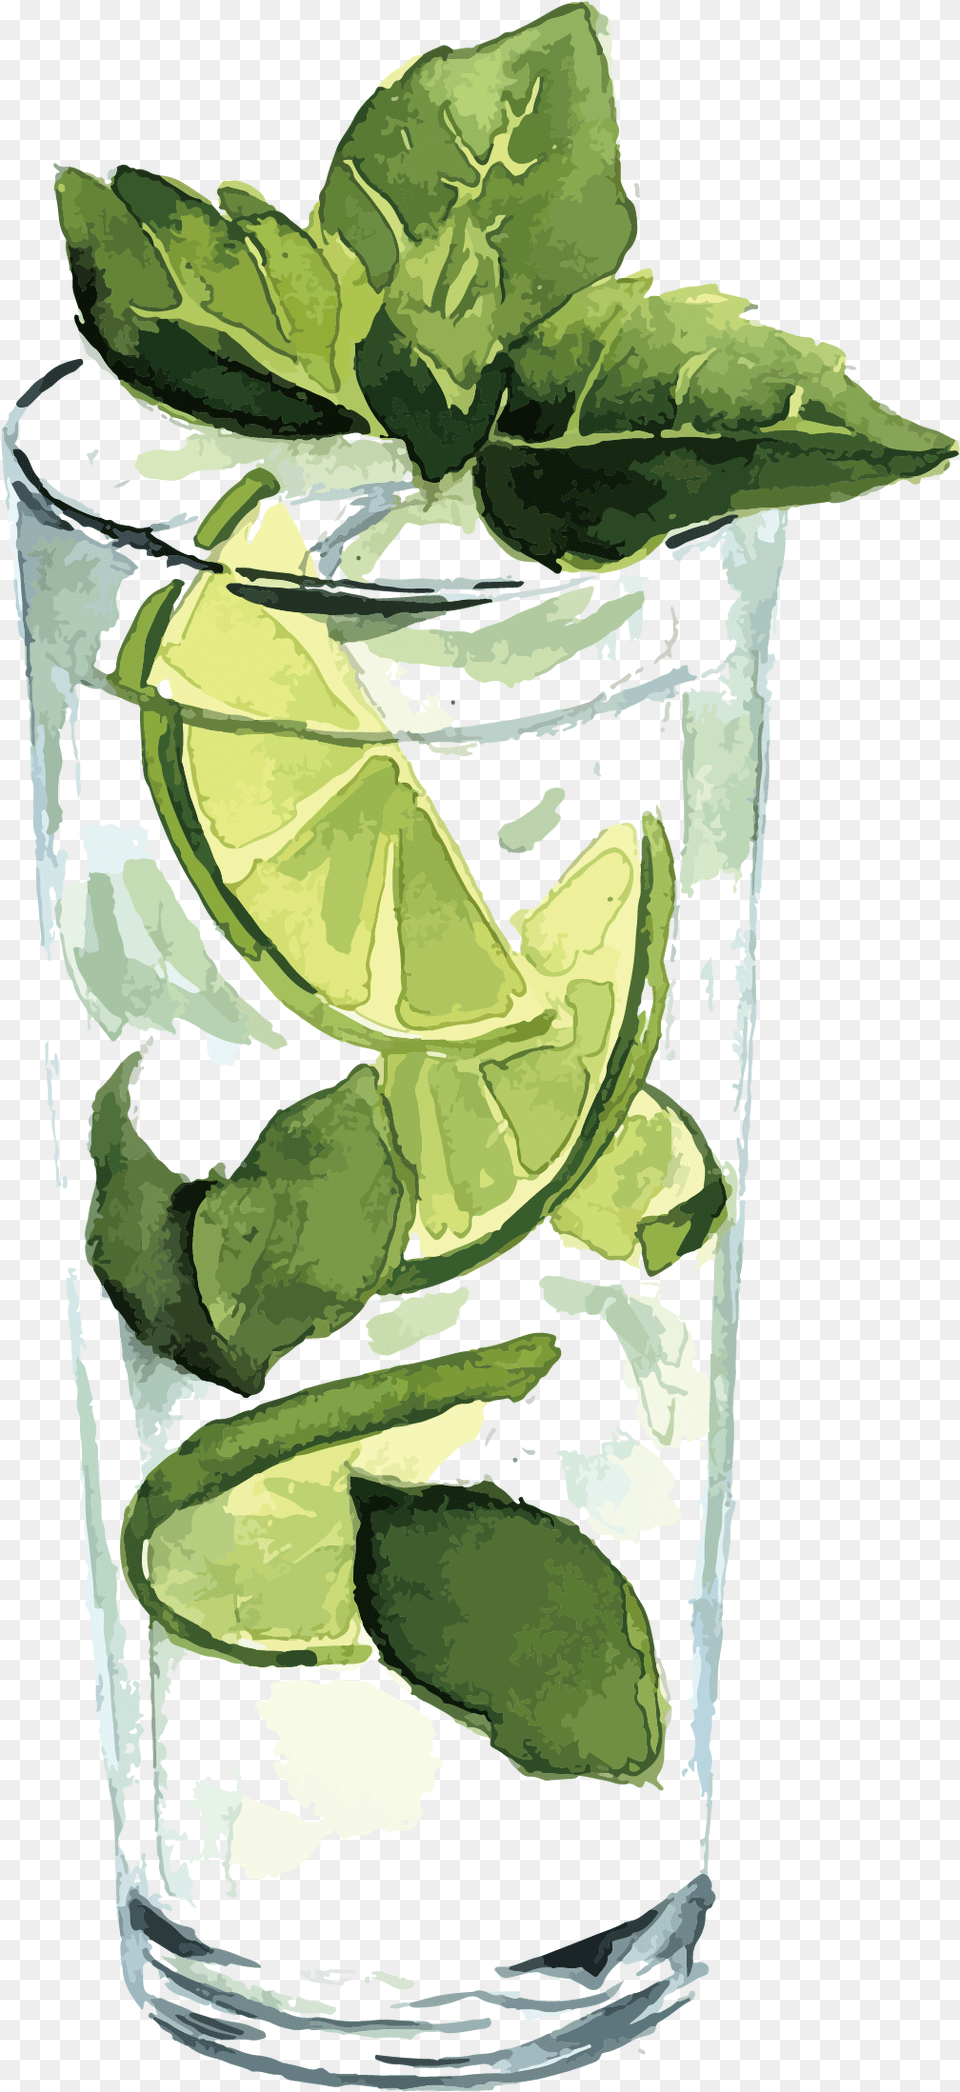 Lemon Juice Lemon Image U0026 Lemon Clipart Lime Juice Clipart Watercolor, Alcohol, Plant, Mojito, Produce Free Transparent Png